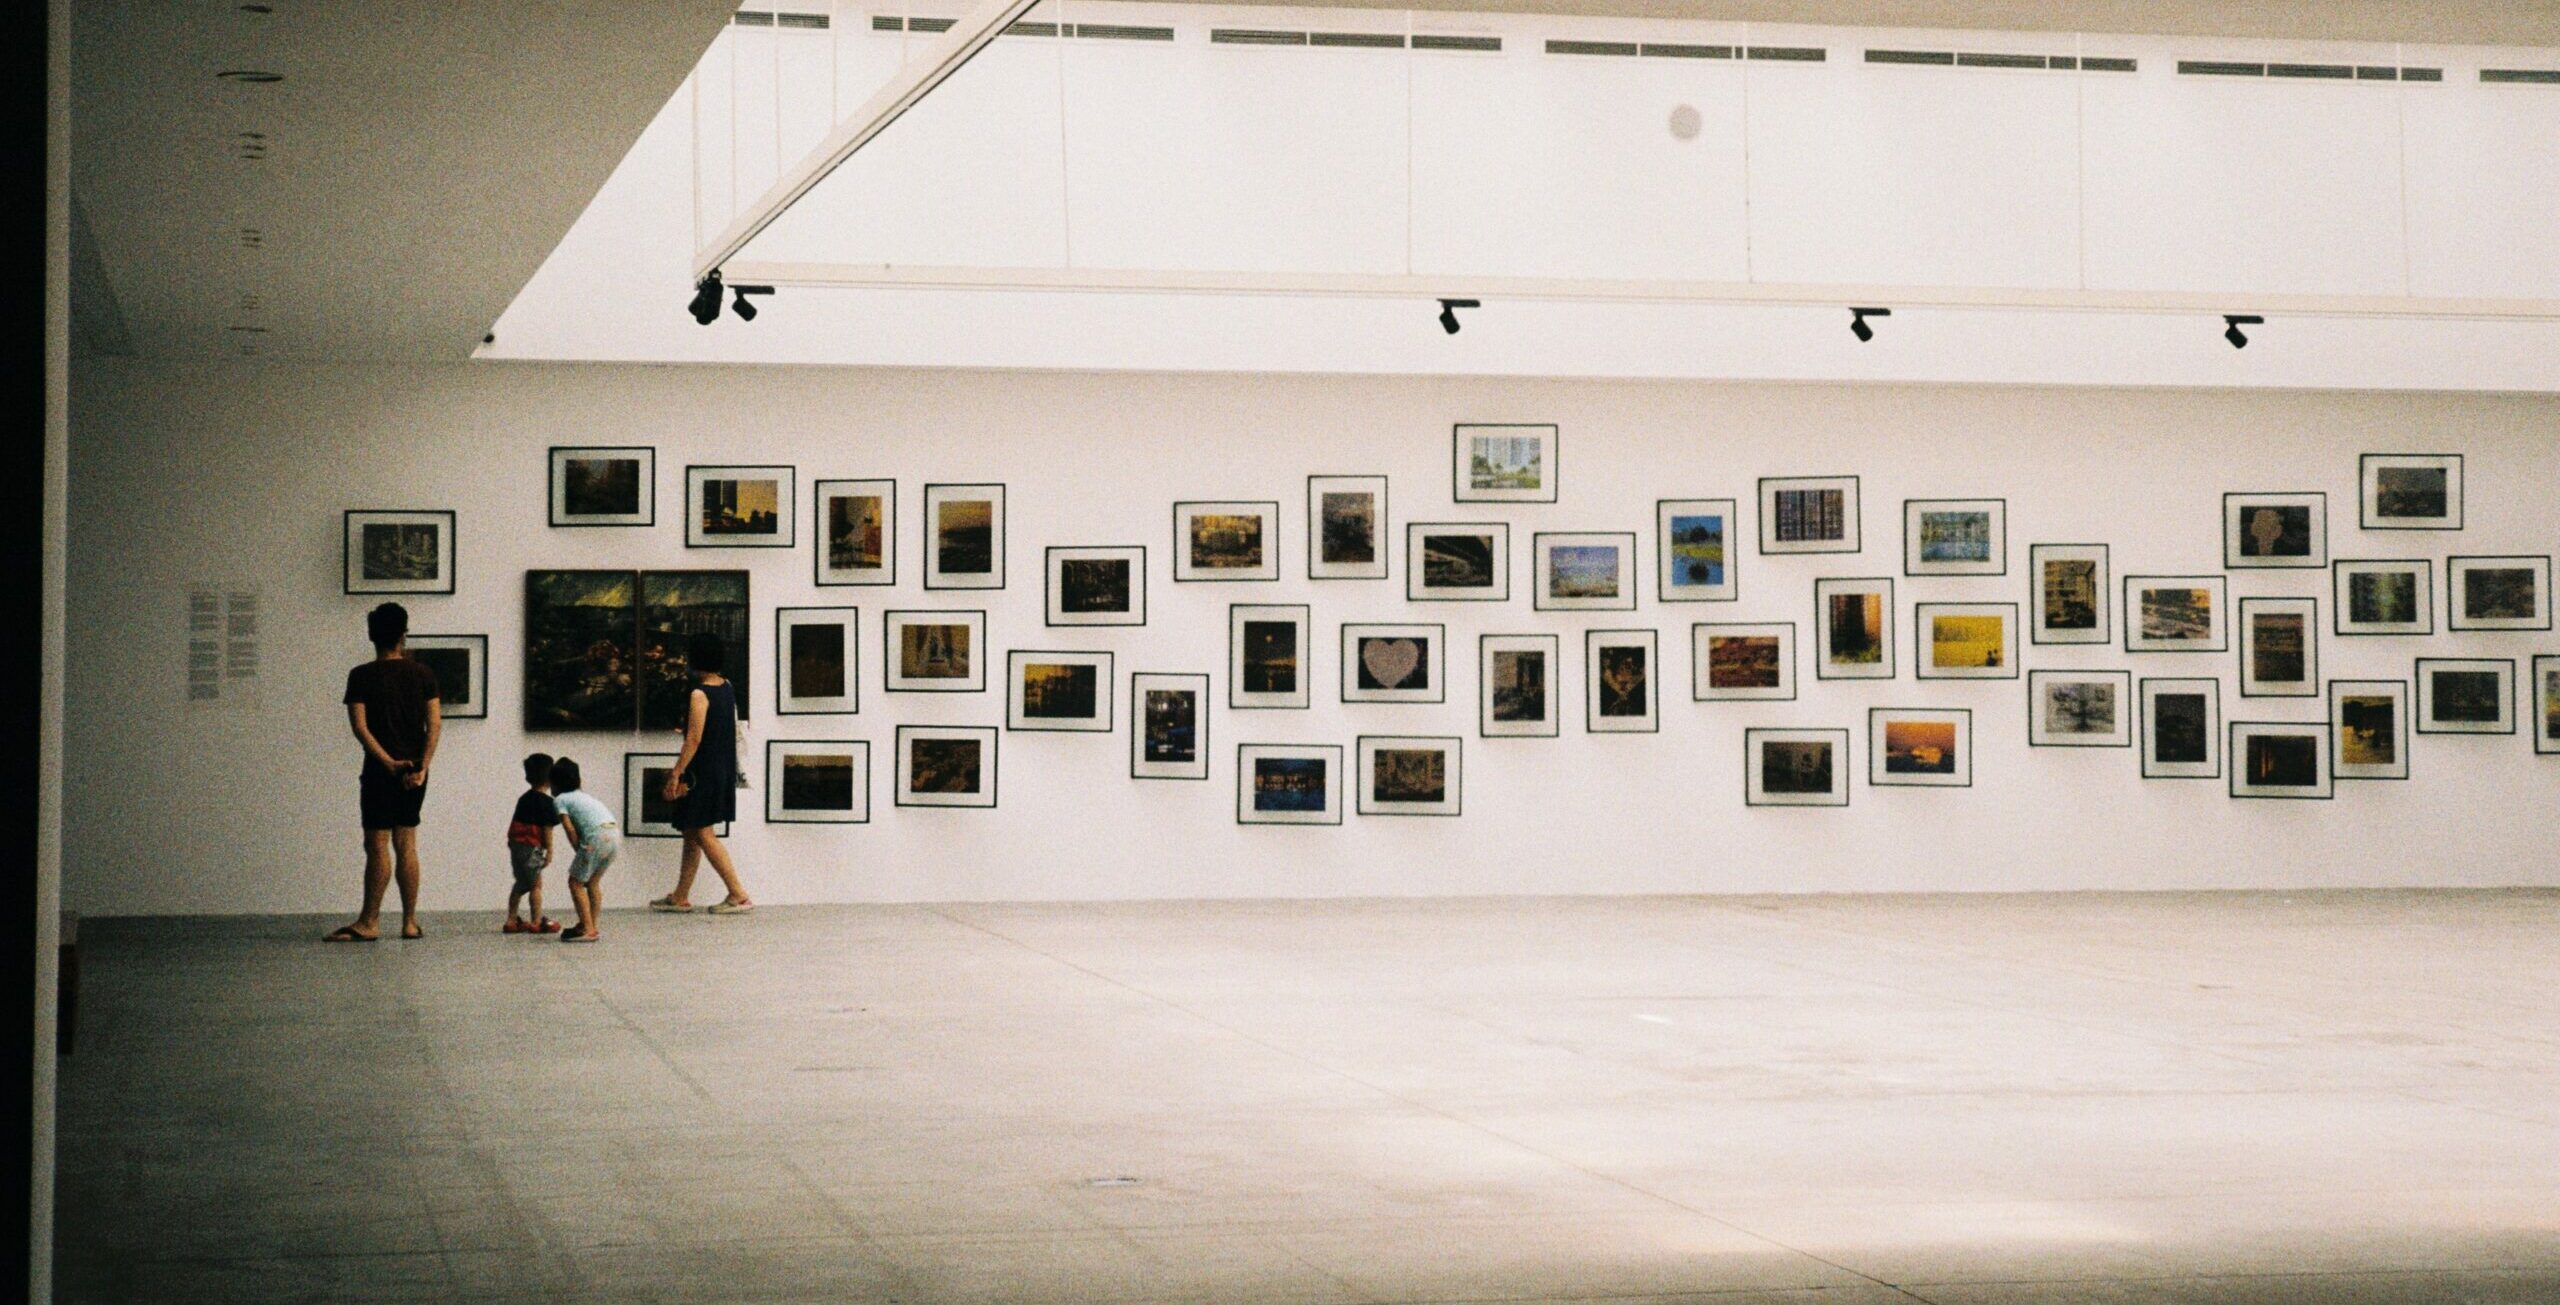 Blick in einen Ausstellungsraum mit mehreren Bilderrahmen